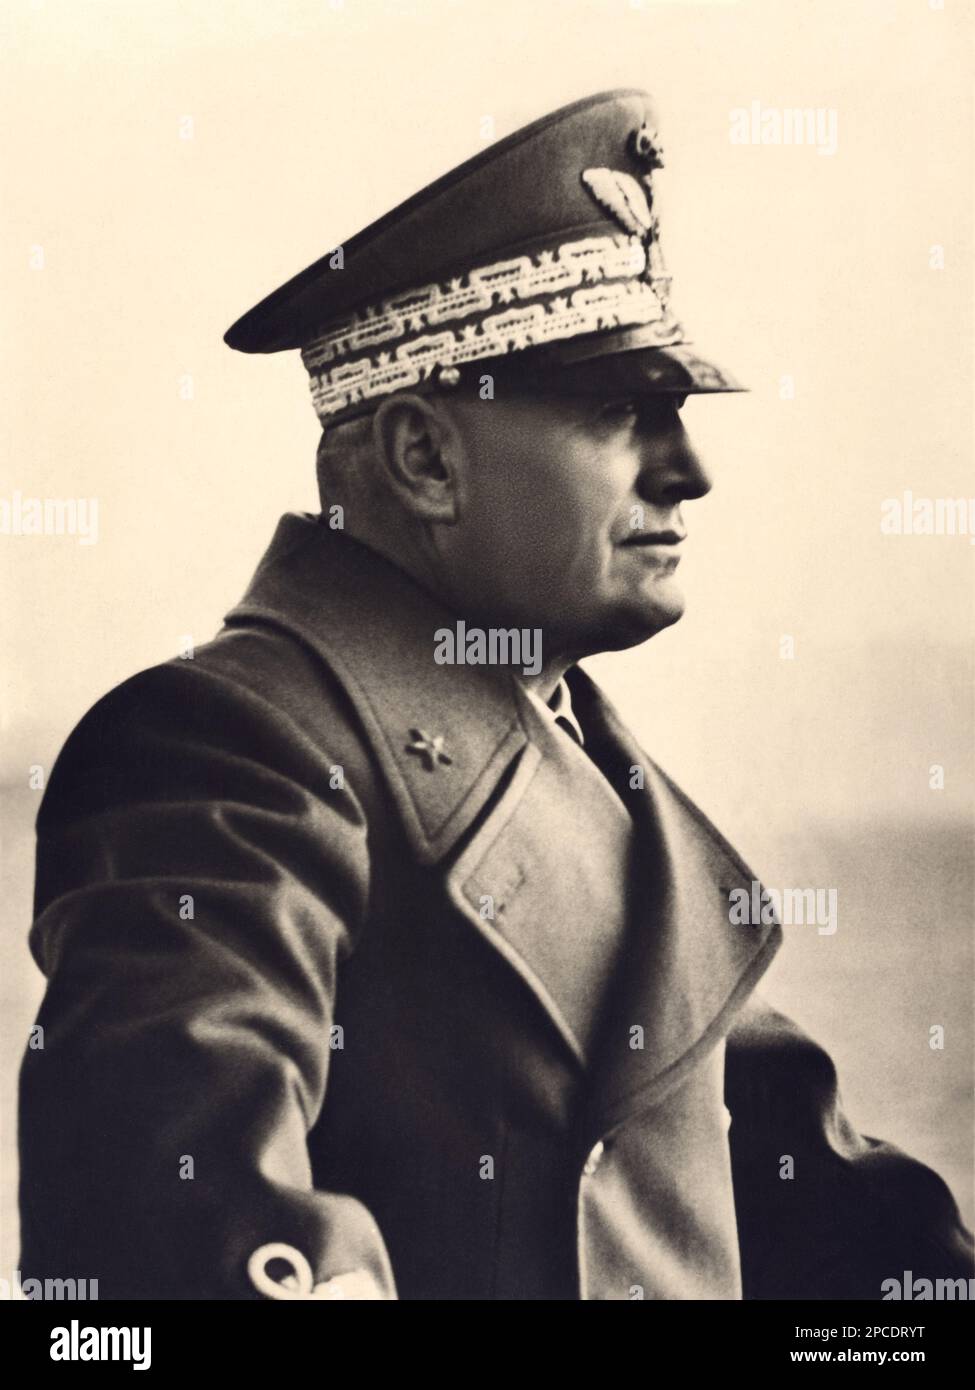 1939 : Der italienische Faschist Duce BENITO MUSSOLINI zum Zeitpunkt der Proklamation des Impero d' Italia - Rituto - Portrait - POLITICA - POLITICA - POLITIC - Portrait - ITALIEN - FASCHISMUS - FASCHISMUS - FASCHISTEN - Militäruniform - Divisa - Uniforme militare - Hut - cappello - CAPPOTTO - PROFILO - PROFIL - ZWEITER WELTKRIEG - SECONDA GUERRA MONDIALE - 2ND - KOLOSSEO - ROM - ITALIA --- ARCHIVIO GBB Stockfoto